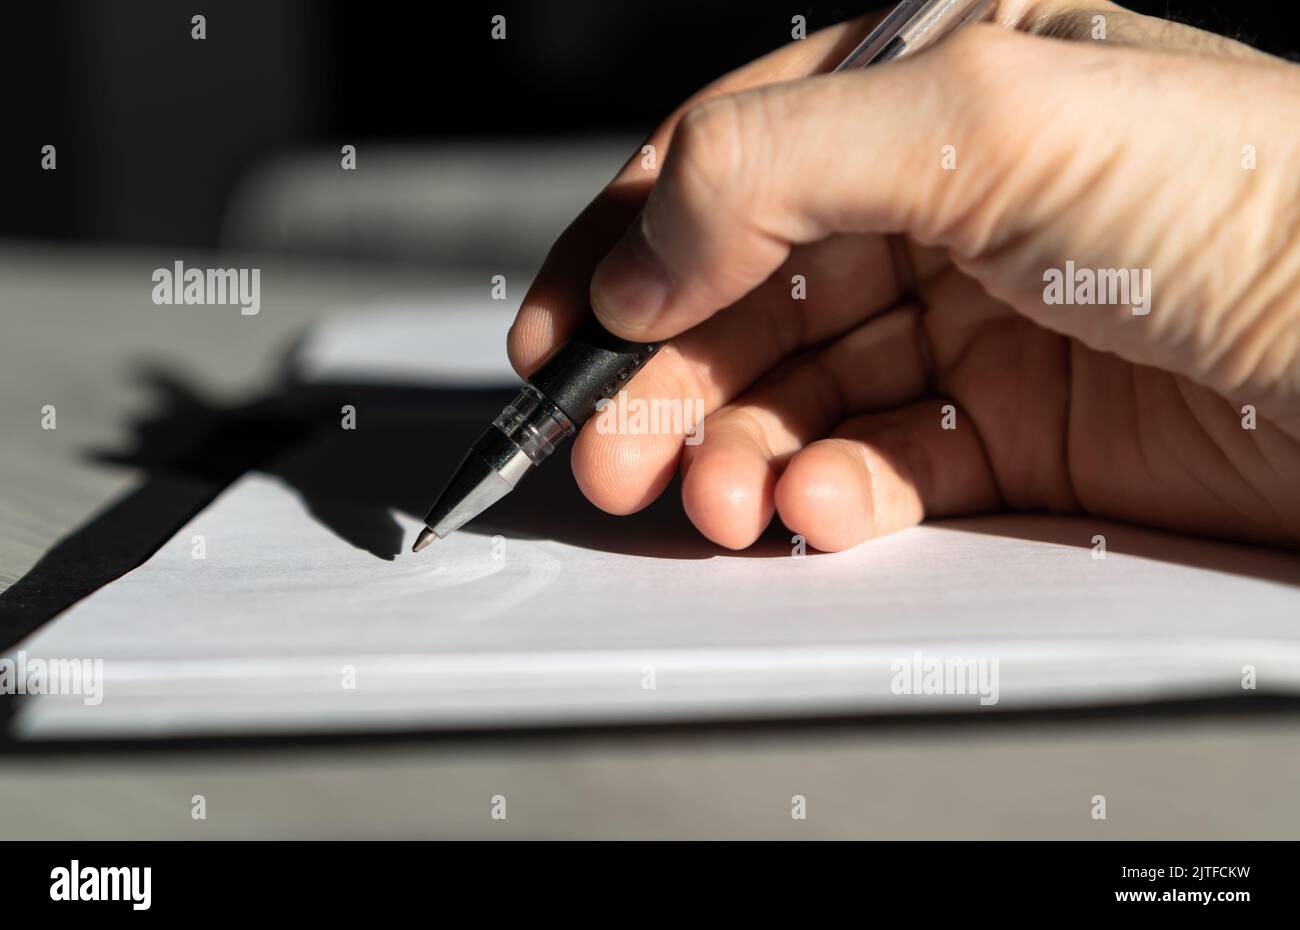 Kaukasische Handsilhouette im Begriff, wichtige Dokumente oder Verträge zu unterzeichnen Stockfoto